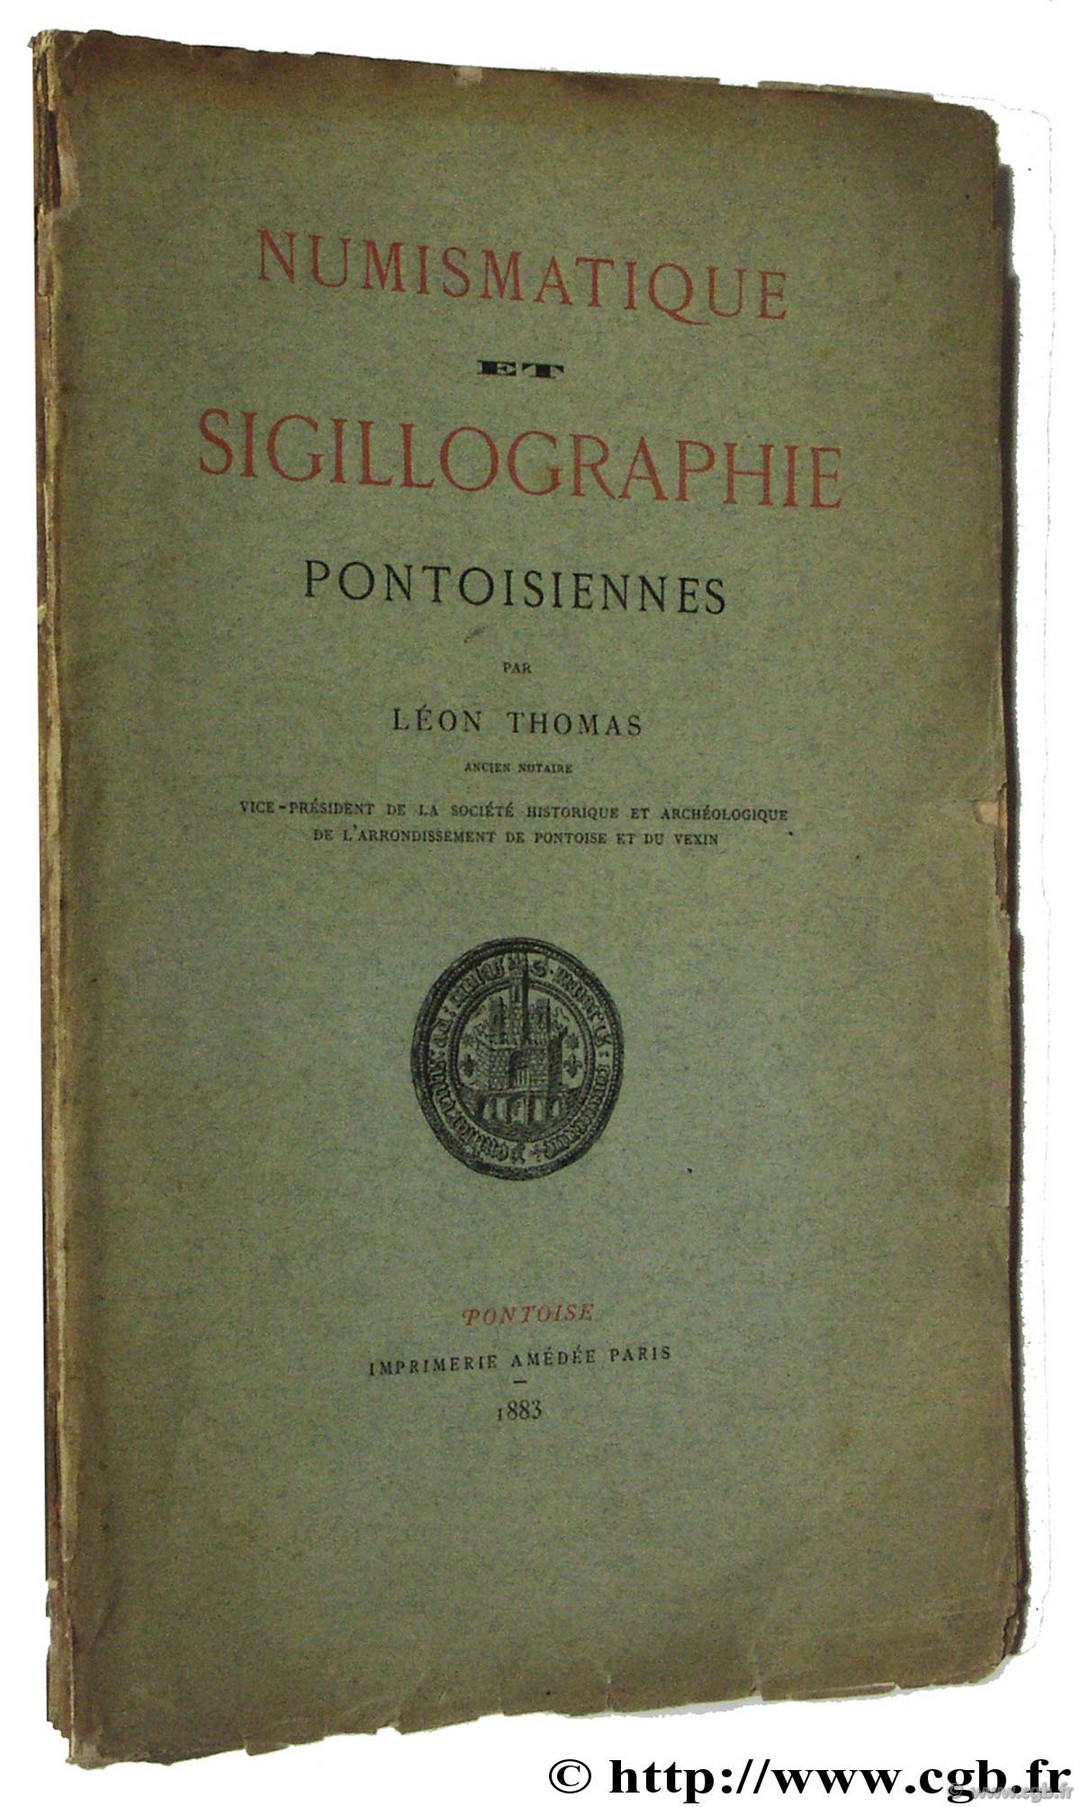 Numismatique et Sigillographie pontoisienne THOMAS L.